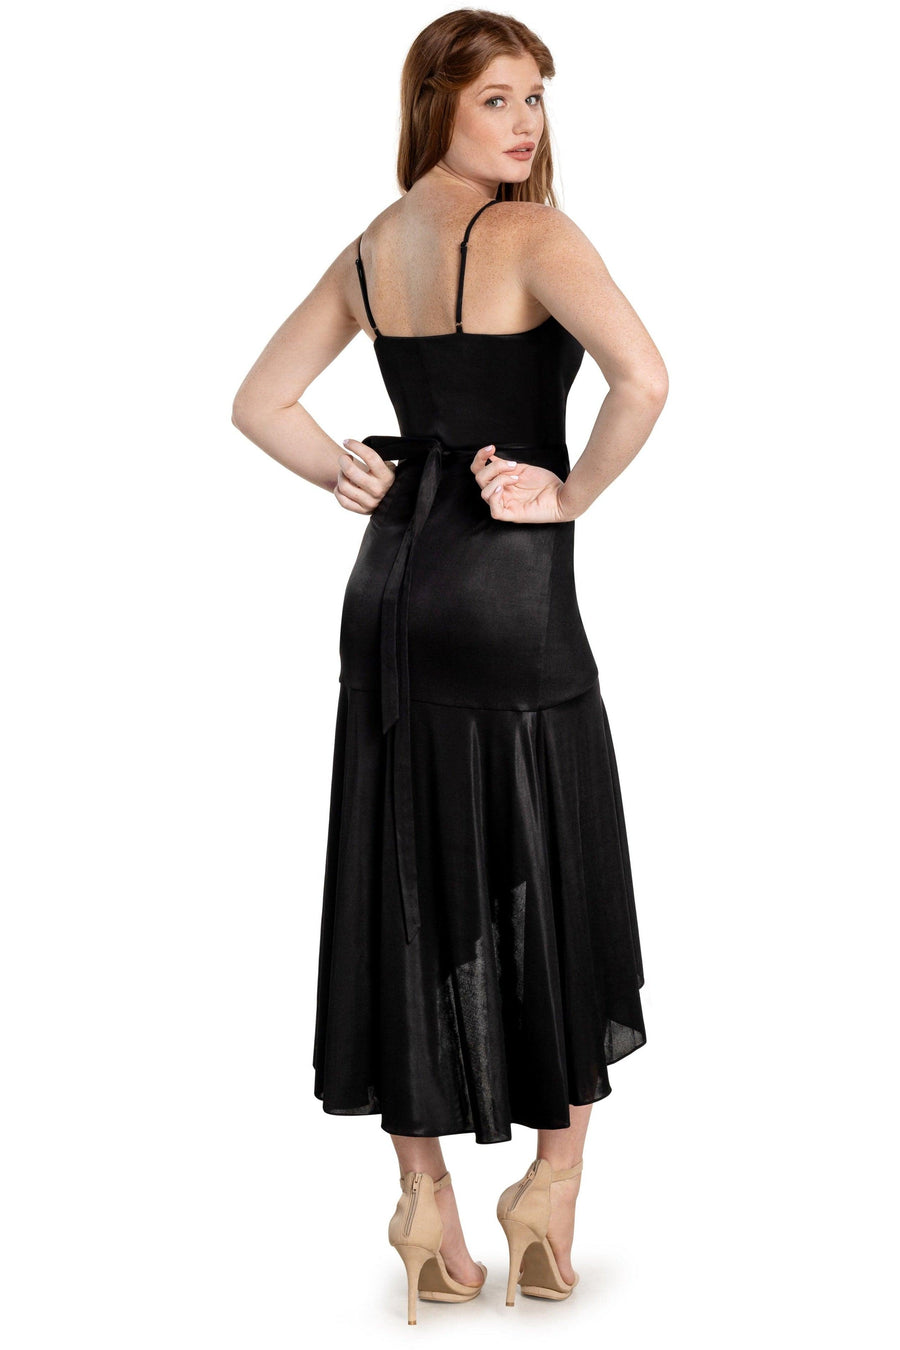 Salome Dress / BLACK